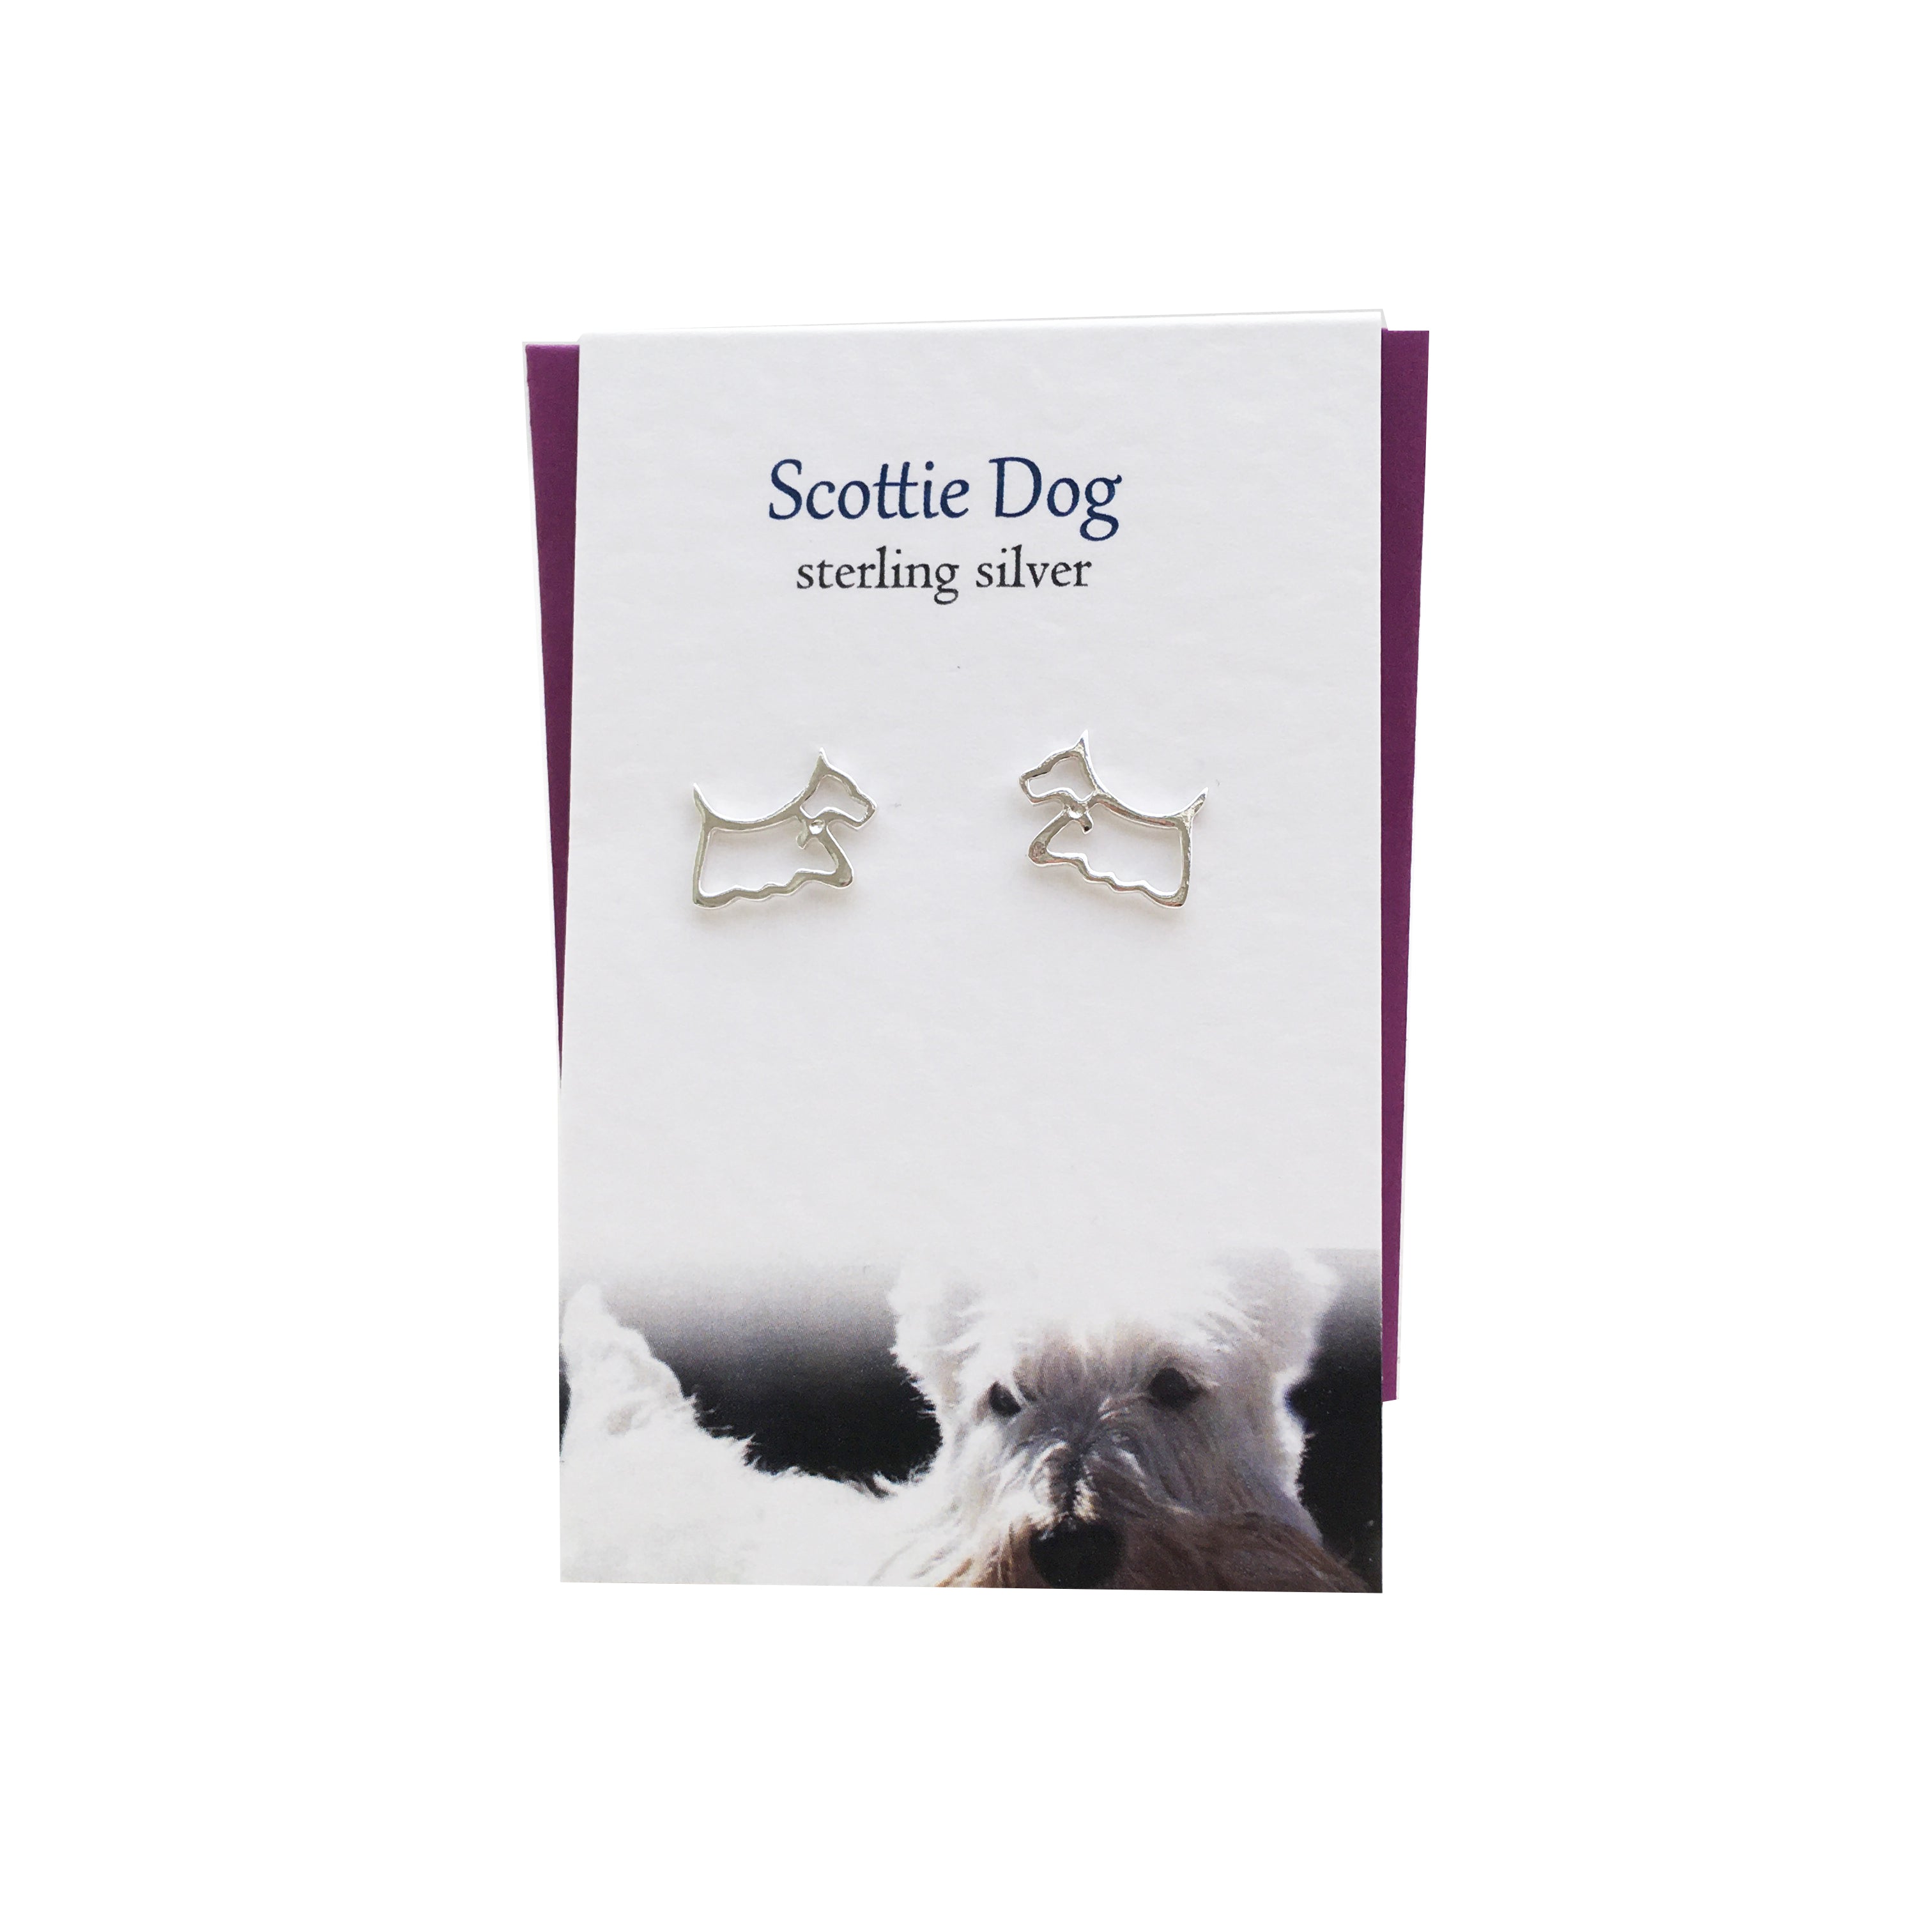 Scottie Dog silver stud earrings| The Silver Studio Scotland